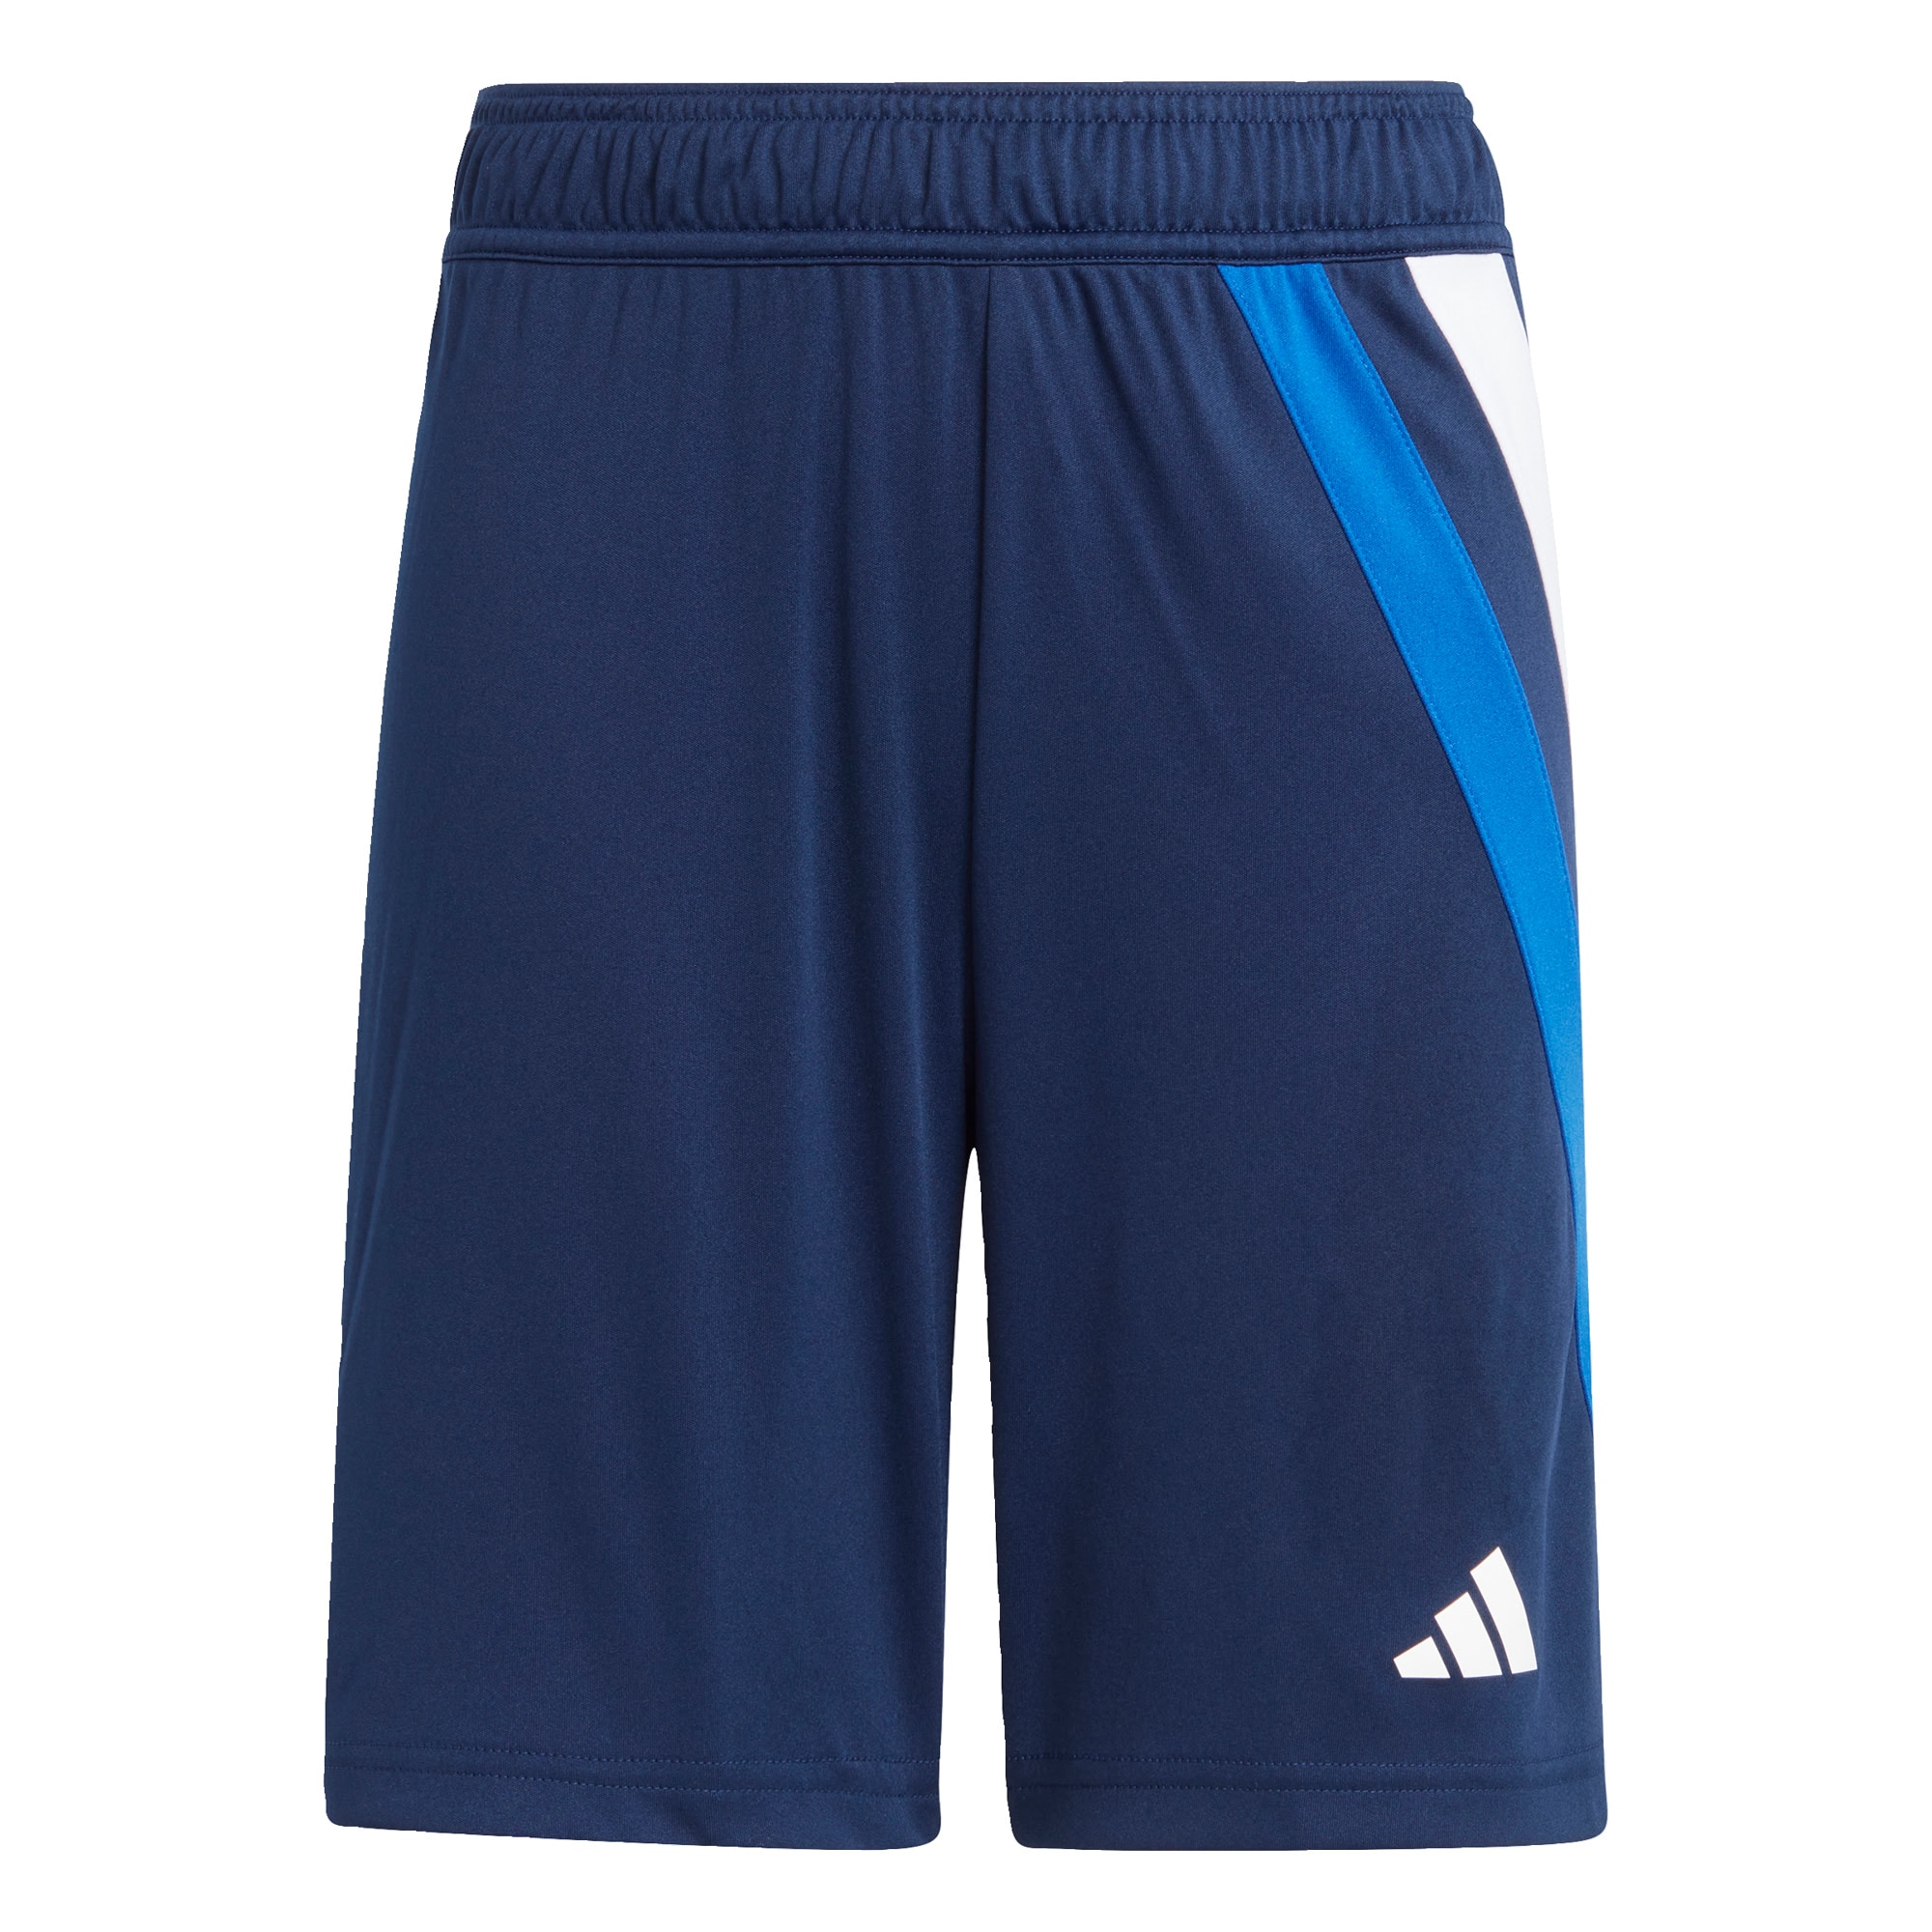 ADIDAS PERFORMANCE Sportinės kelnės 'Fortore 23' tamsiai mėlyna / azuro spalva / raudona / balta